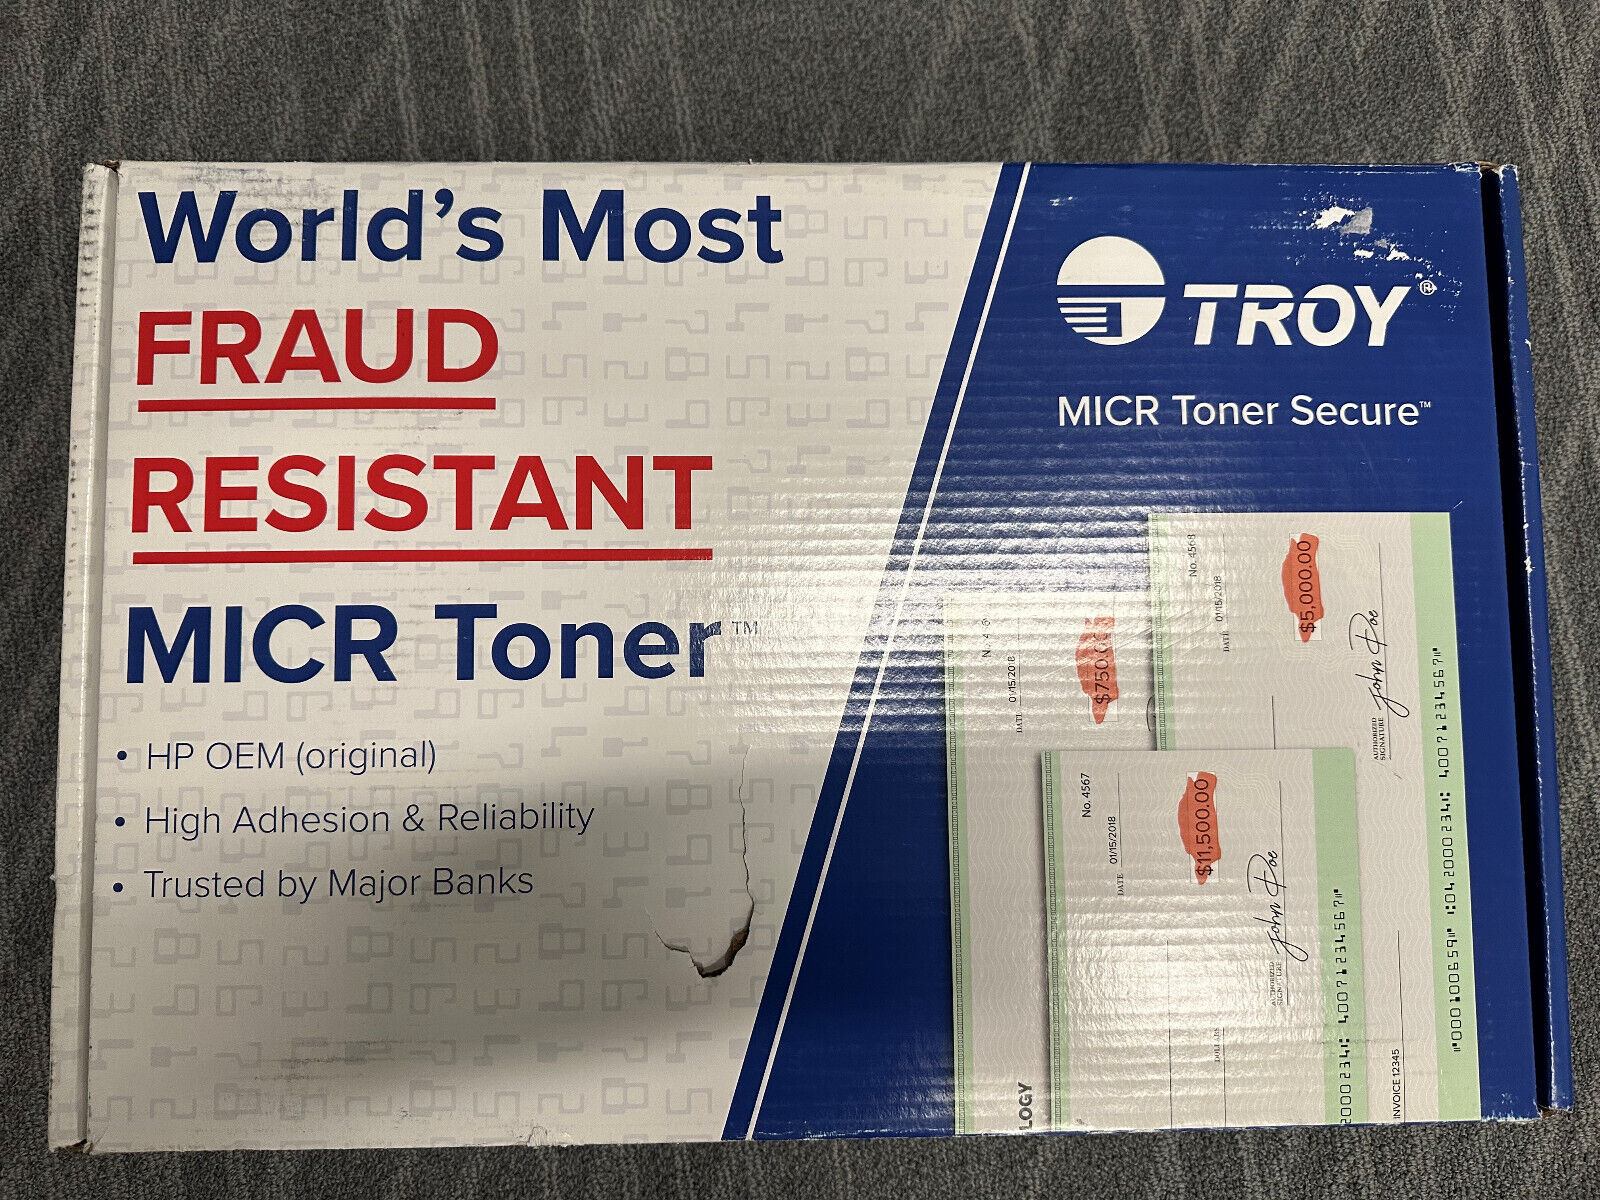 TROY MICR TONER SECURE FRAUD RESISTANT CARTRIDGE 02-88000-001 HP M806